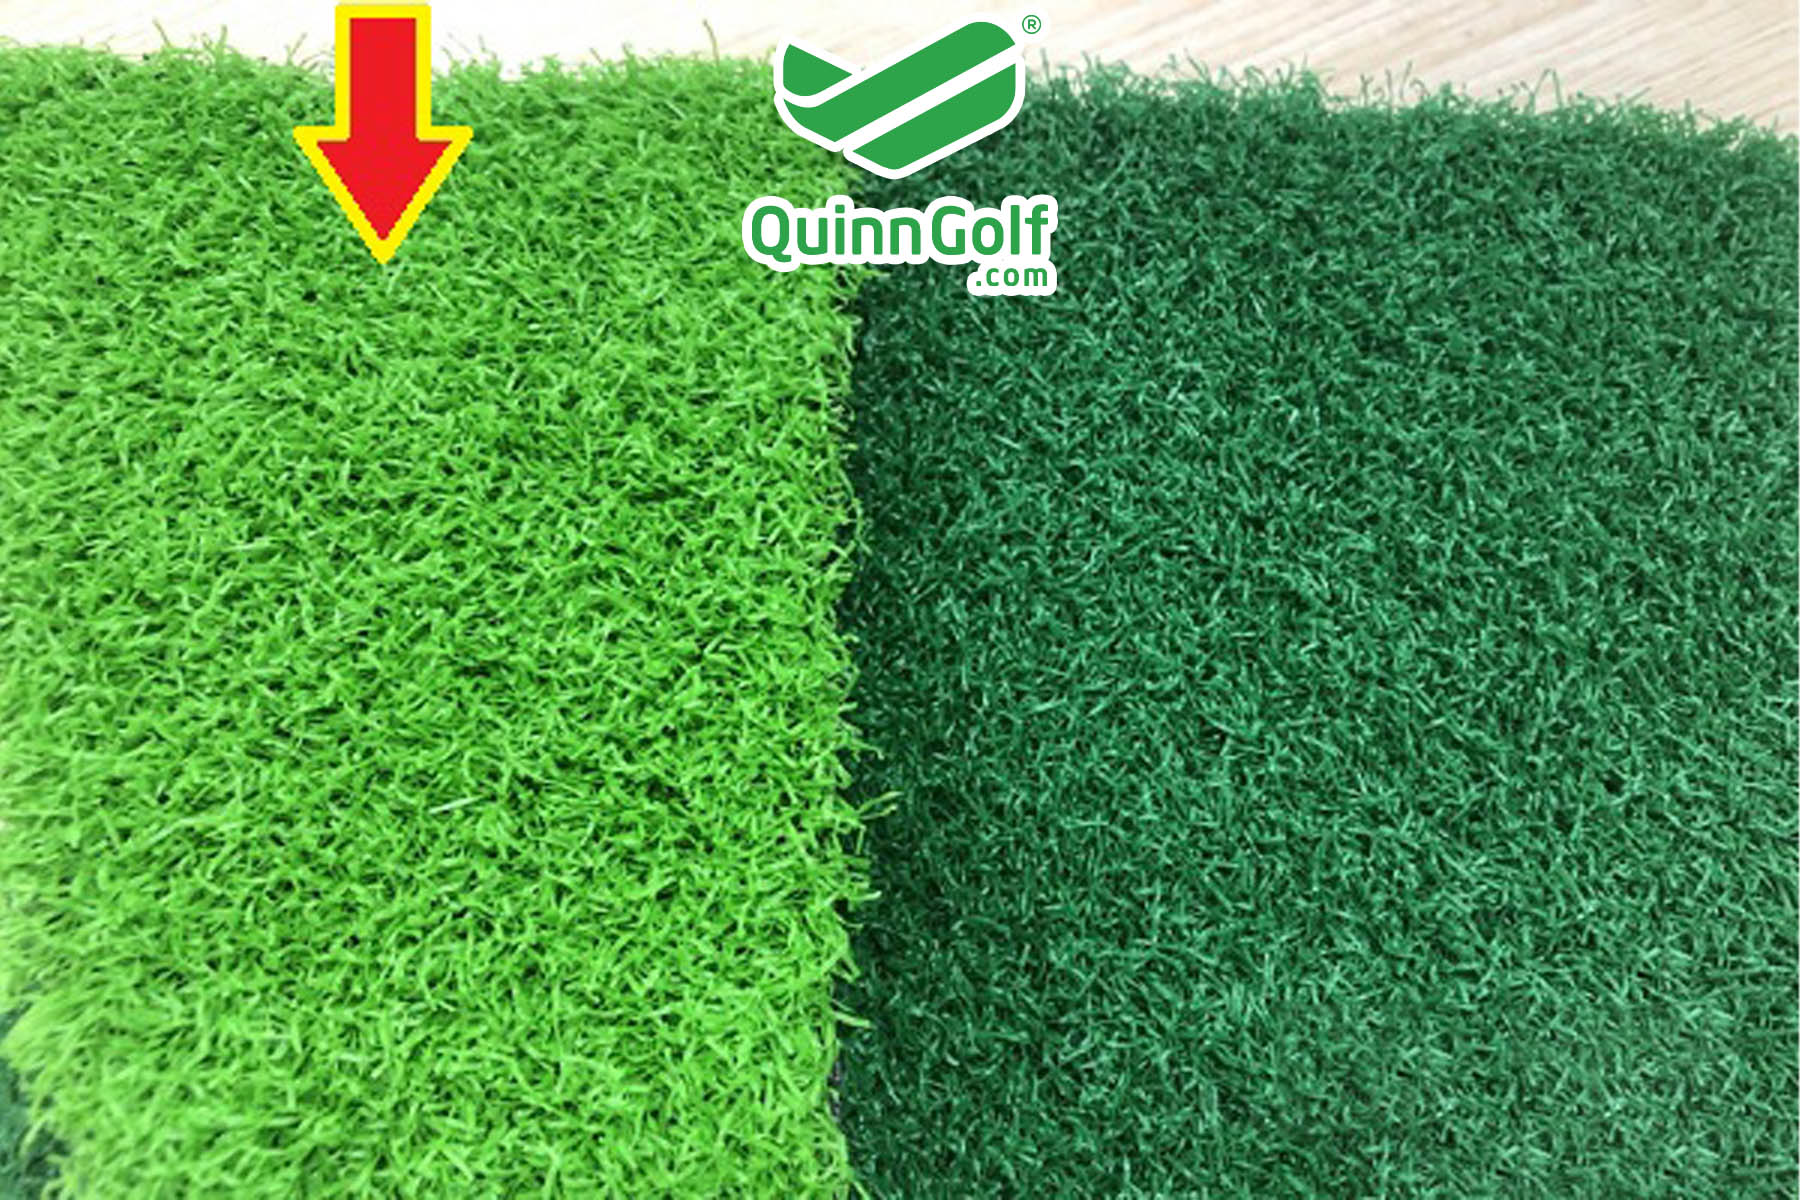 cỏ golf màu xanh lá mạ